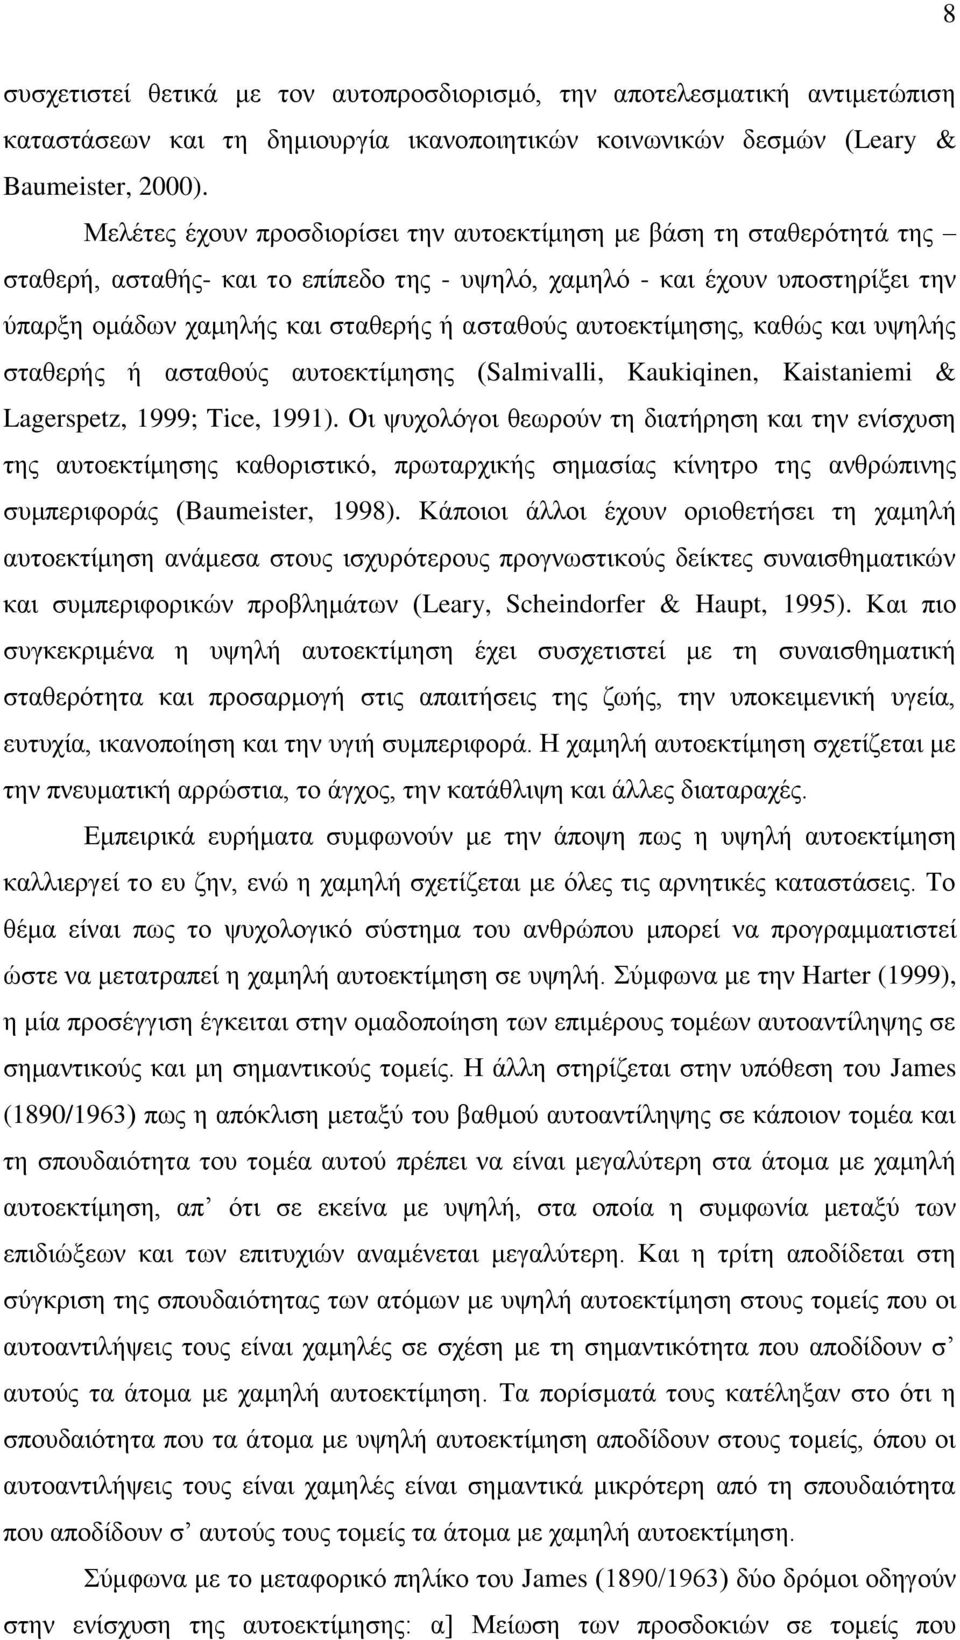 απηνεθηίκεζεο, θαζώο θαη πςειήο ζηαζεξήο ή αζηαζνύο απηνεθηίκεζεο (Salmivalli, Kaukiqinen, Kaistaniemi & Lagerspetz, 1999; Tice, 1991).